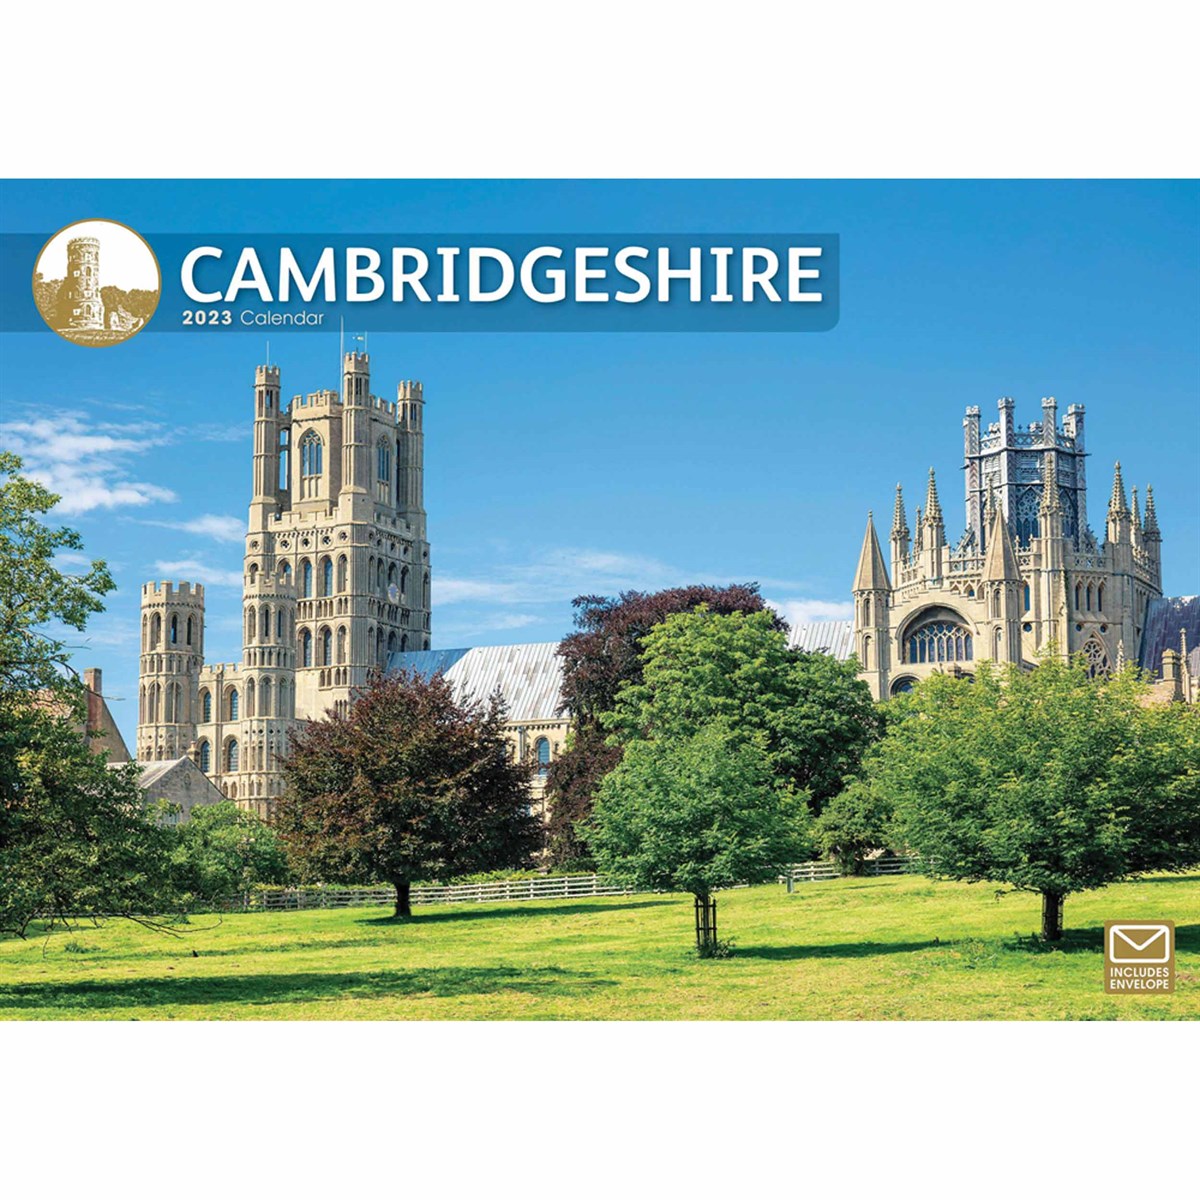 Cambridgeshire A4 2023 Calendars